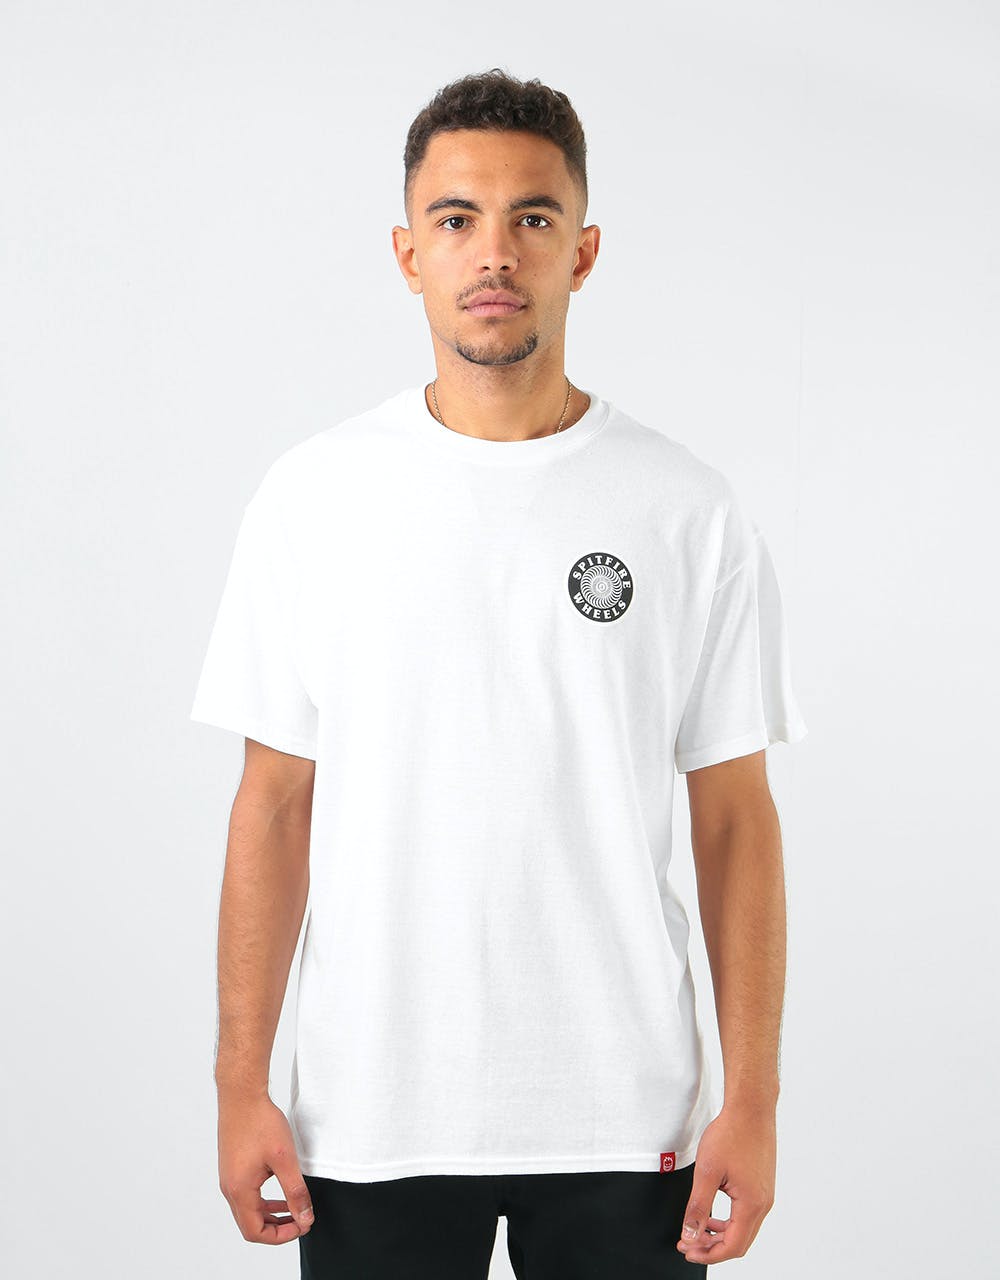 Spitfire OG Circle T-Shirt - White